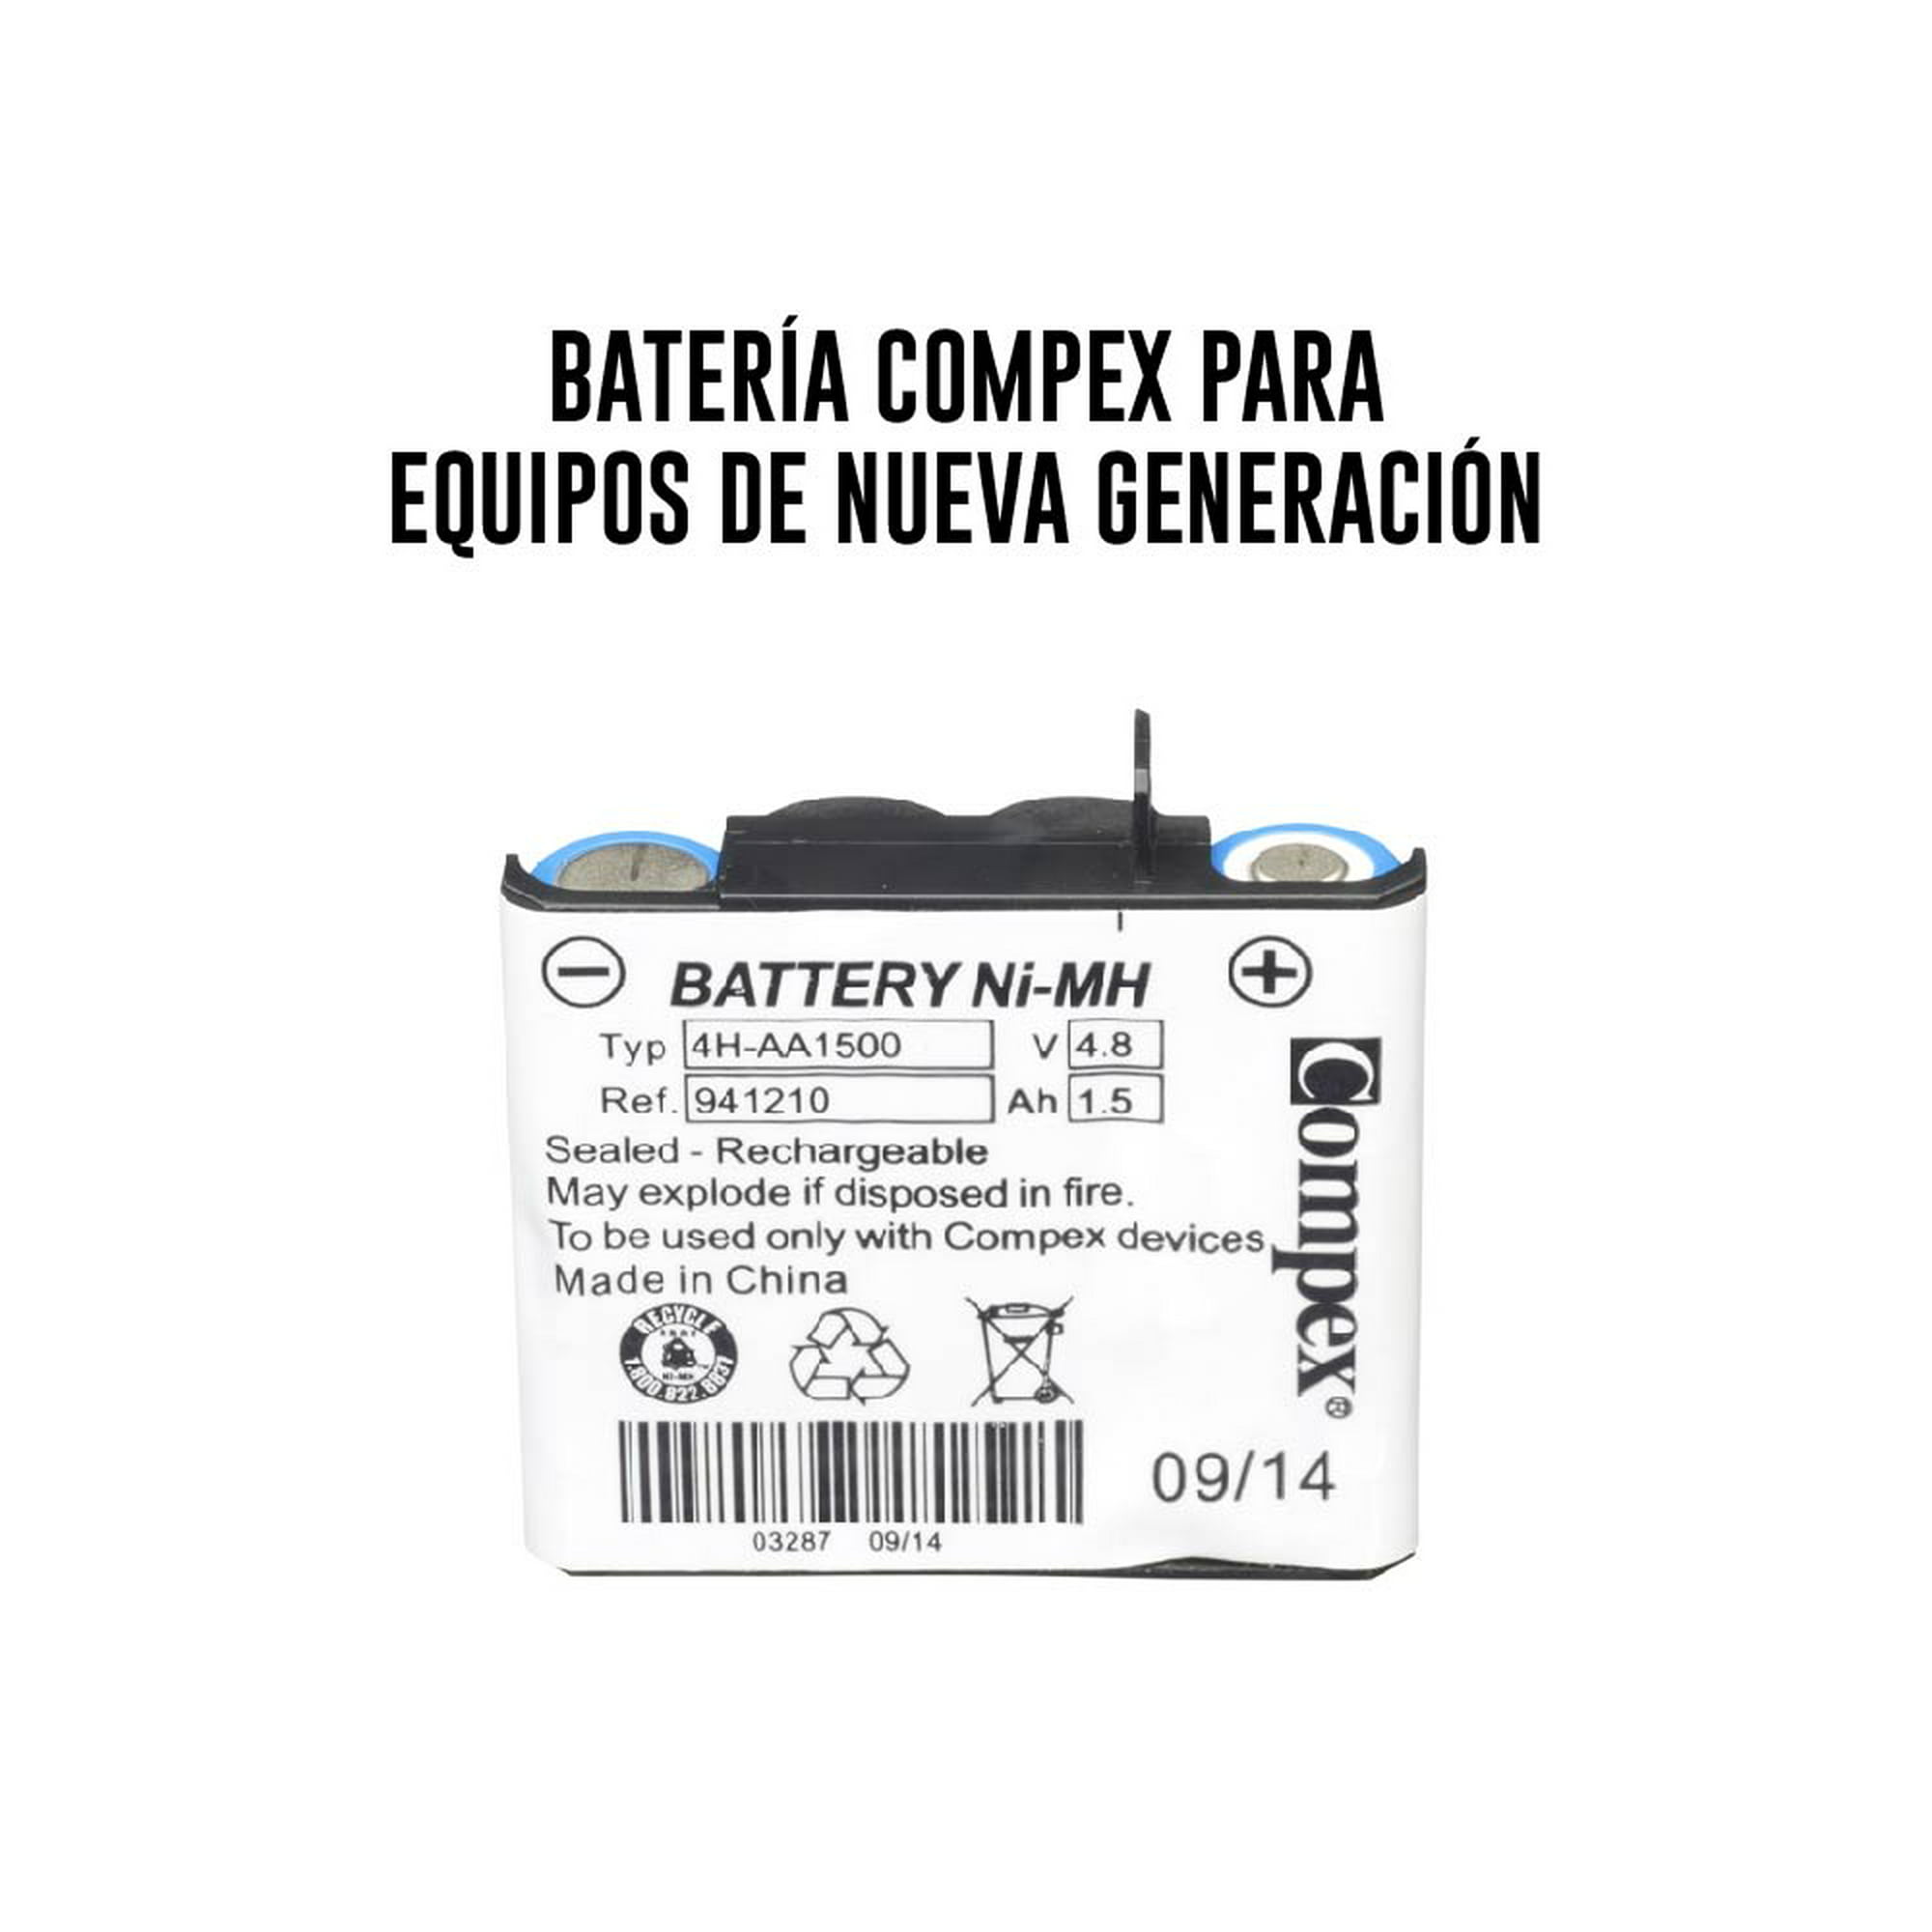 Batería Compex compatible con los modelos Compex d